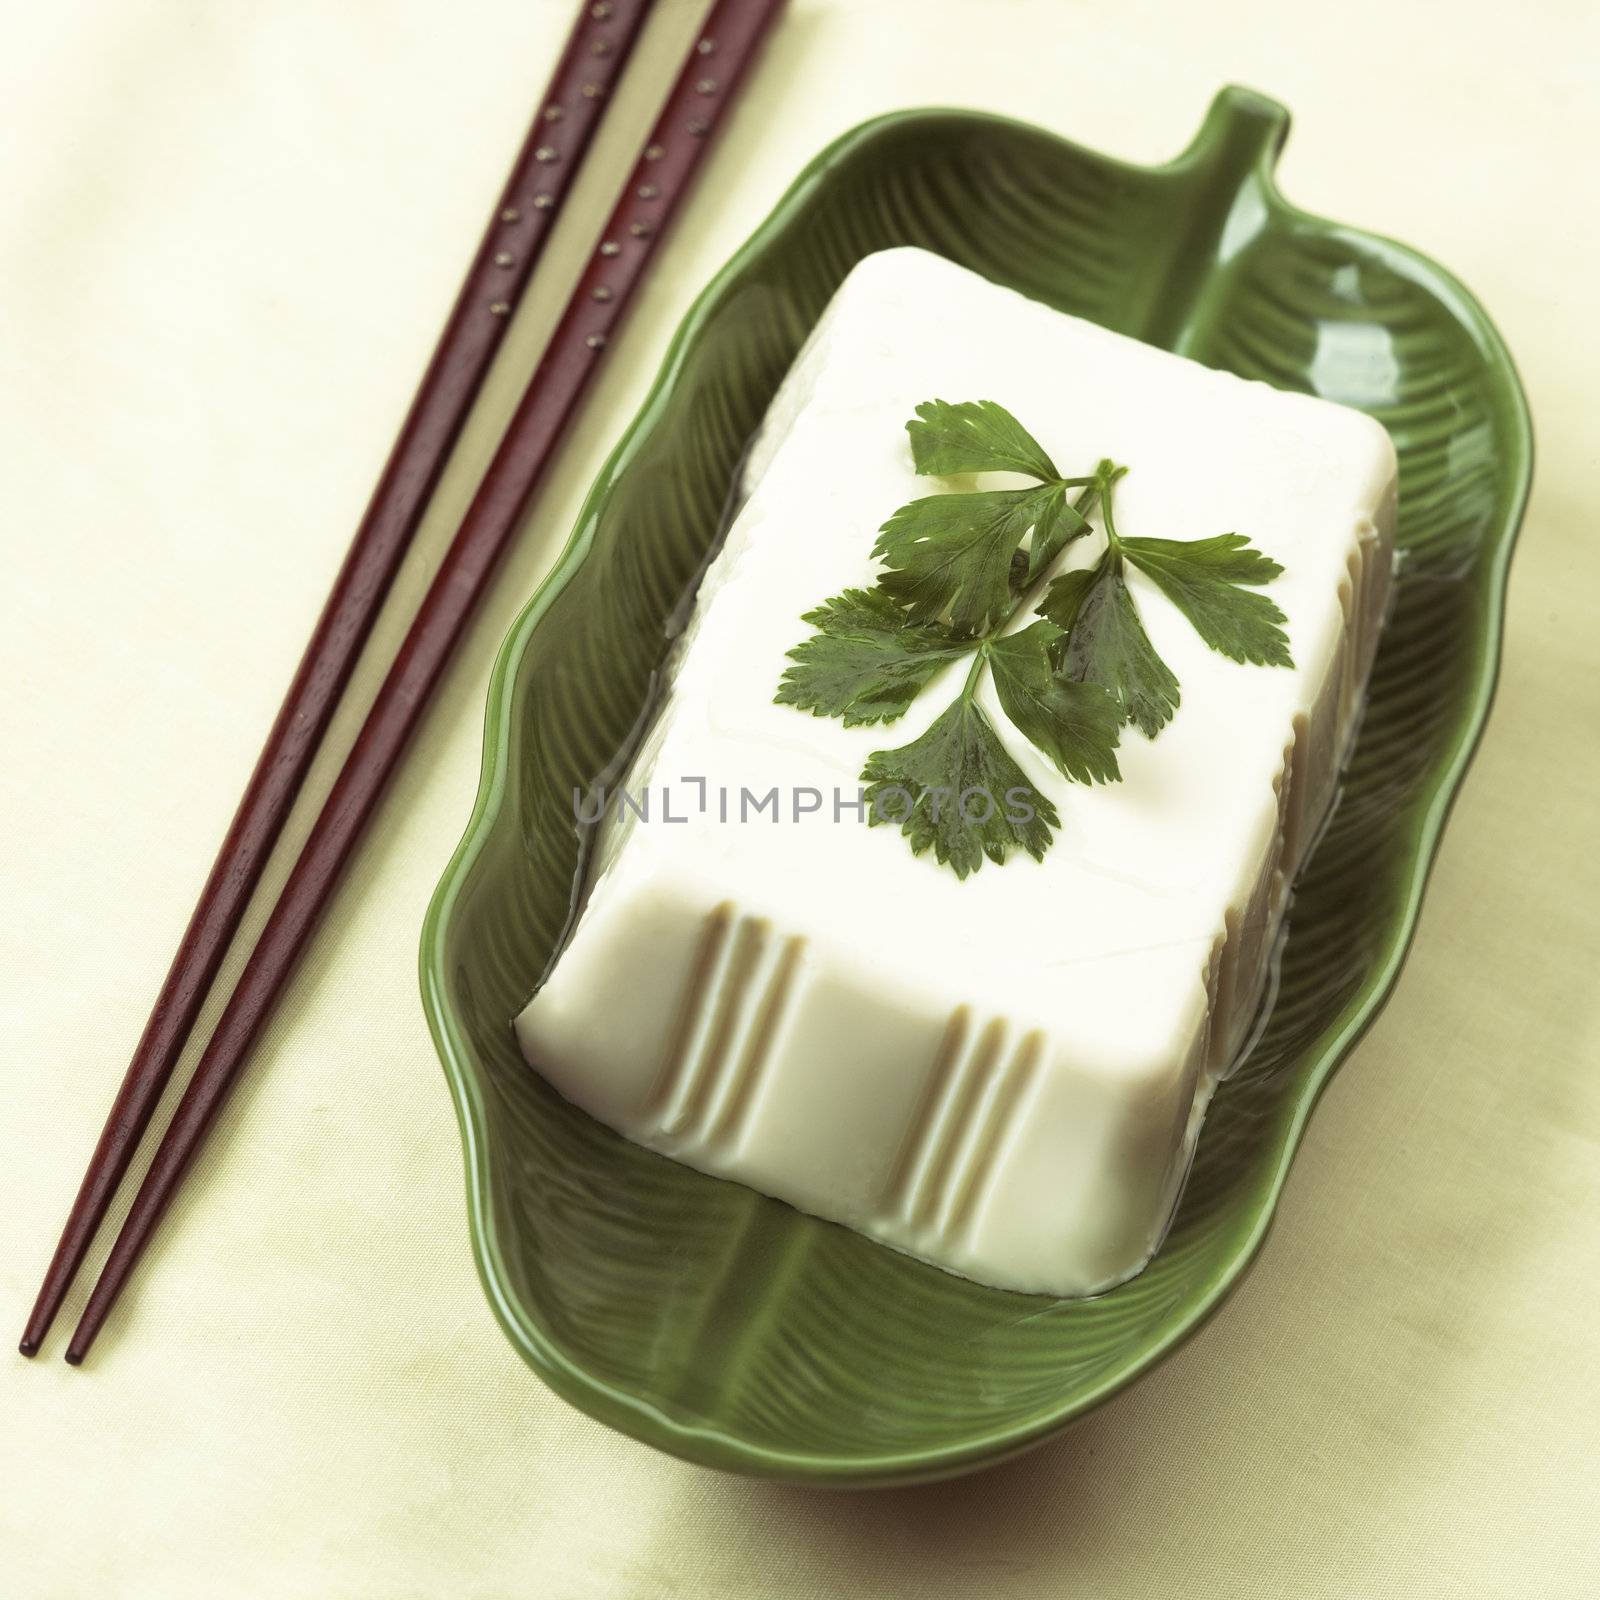 tofu by zkruger